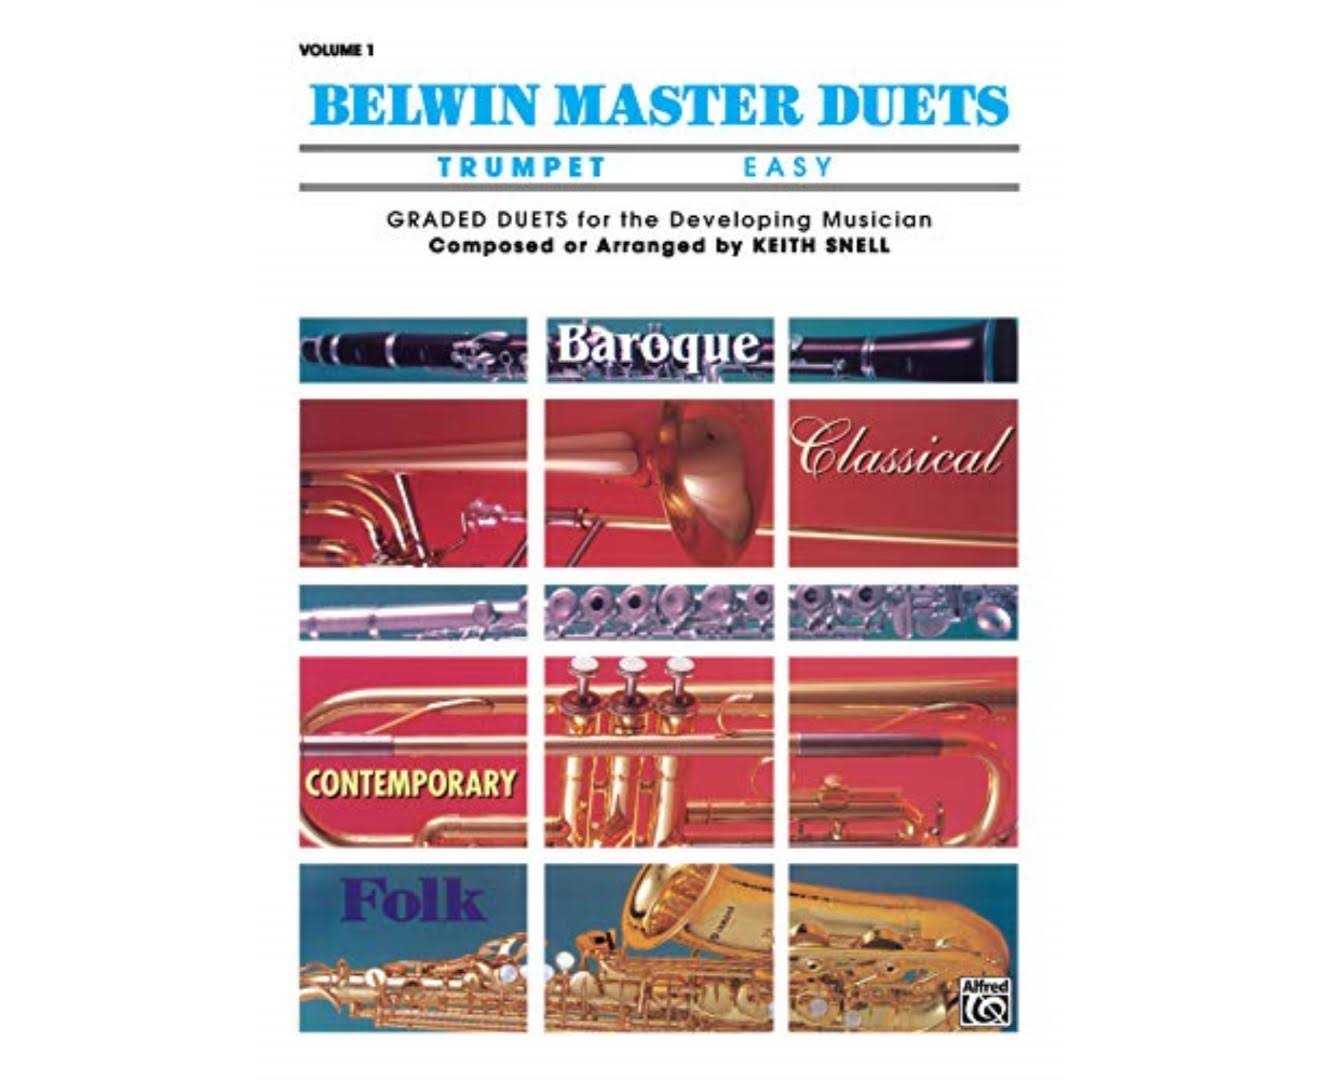 Belwin Master Duets (Trumpet), Volume 1 - Trumpet Duet Sheet Music